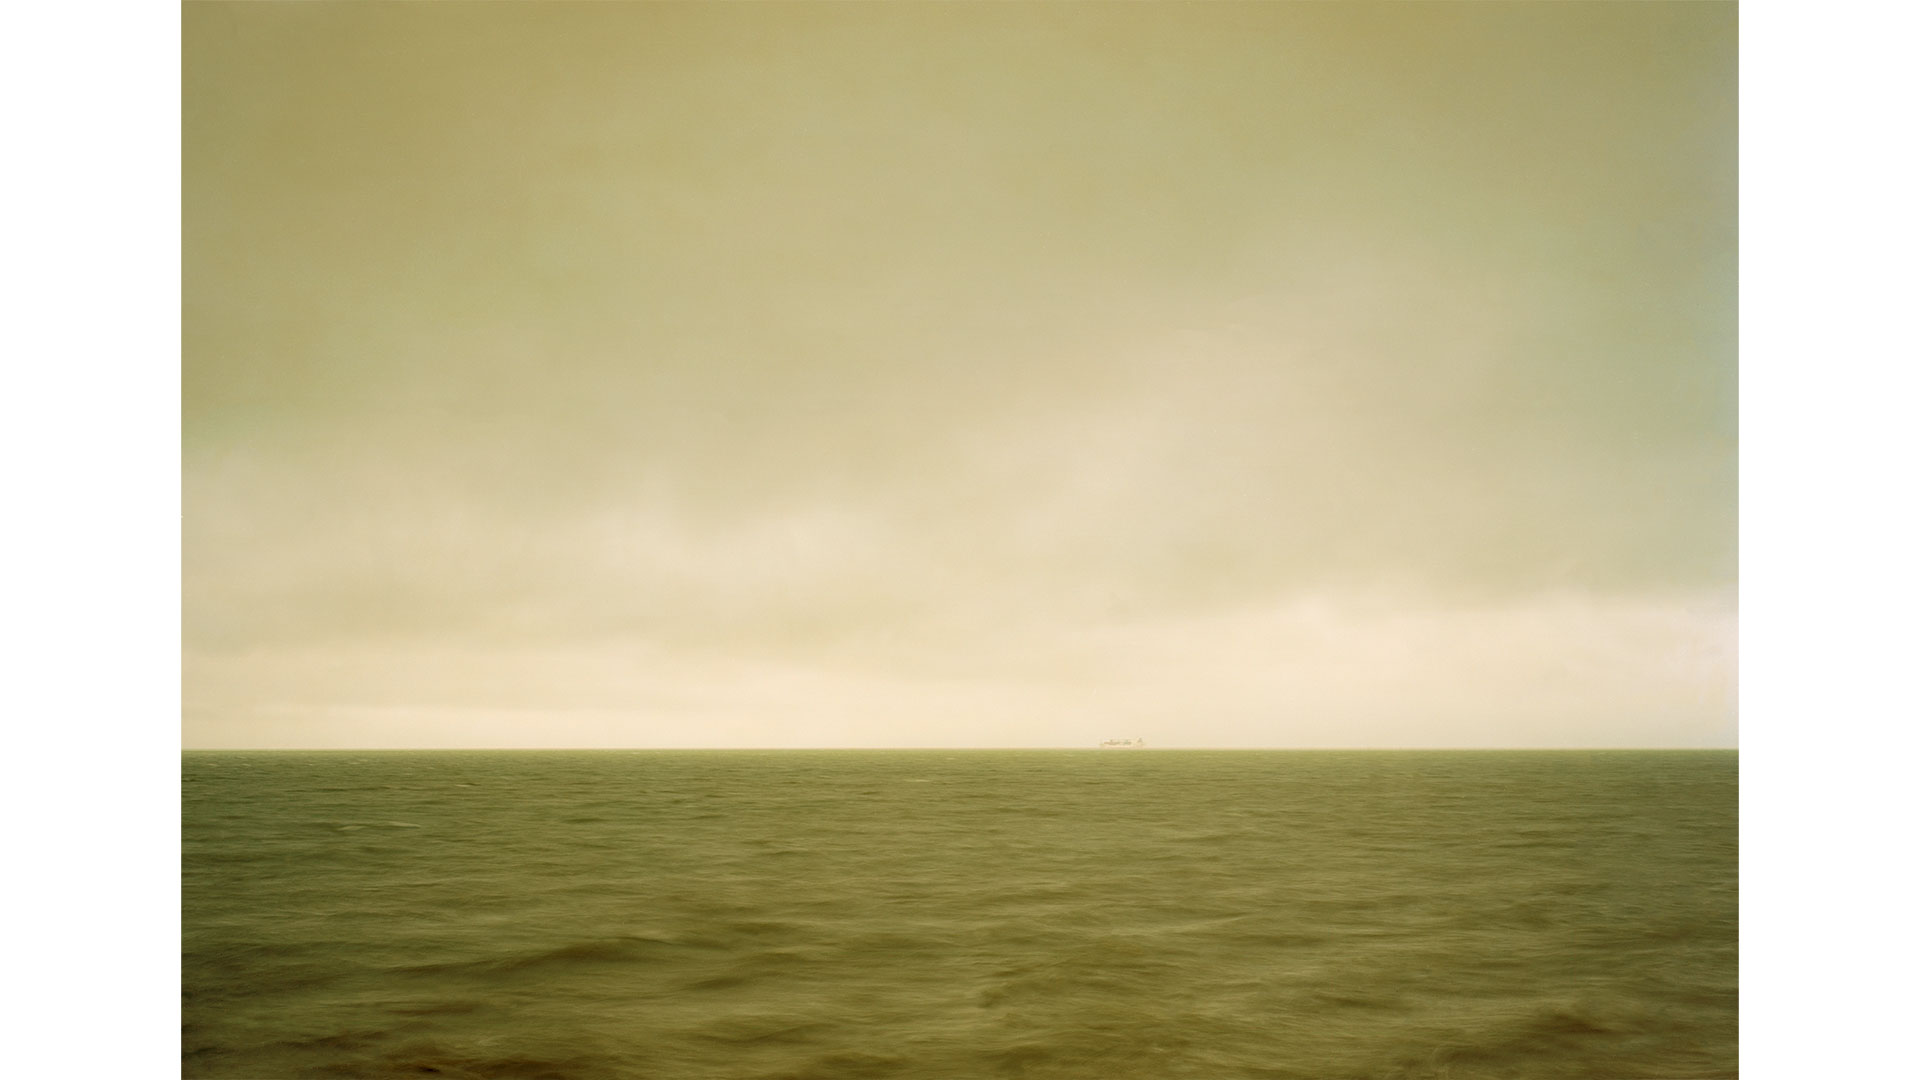 Die Abbildung zeigt ein Kunstwerk Elger Essers. Meer und Himmel mit ruhigem Horizont